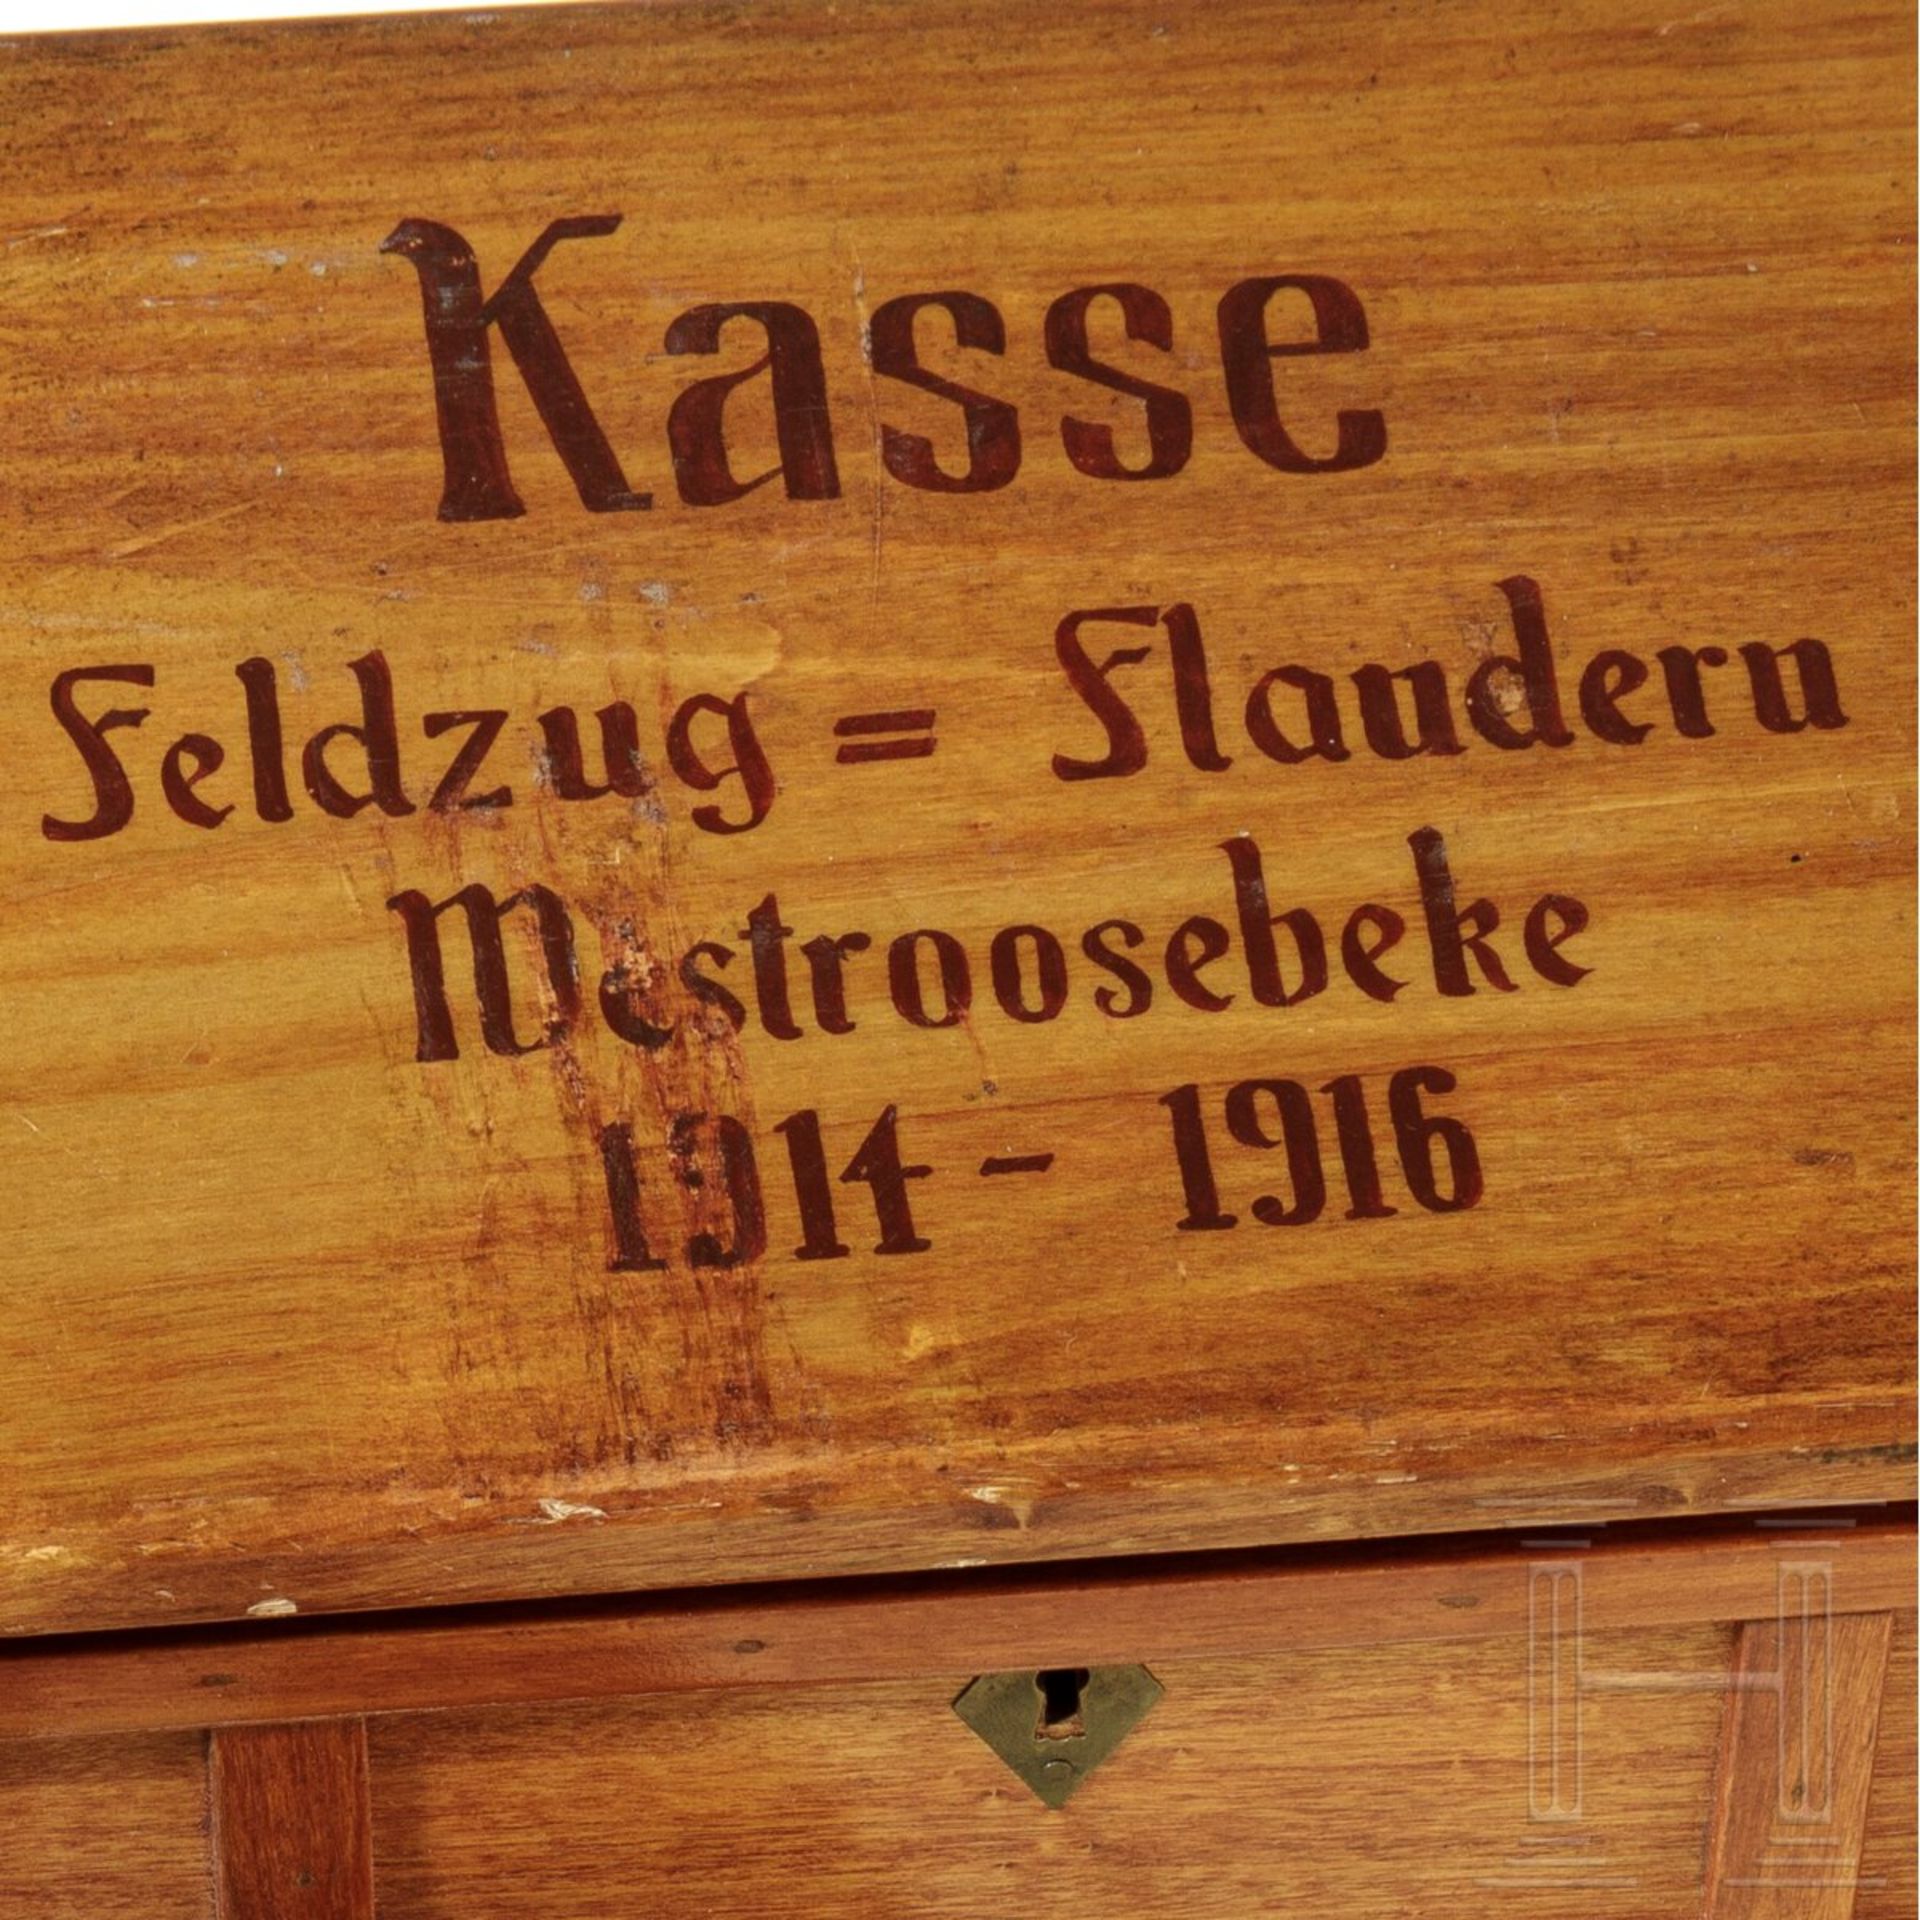 Kasse "Feldzug - Flandern" und Dokumente des Besitzers - Image 5 of 6